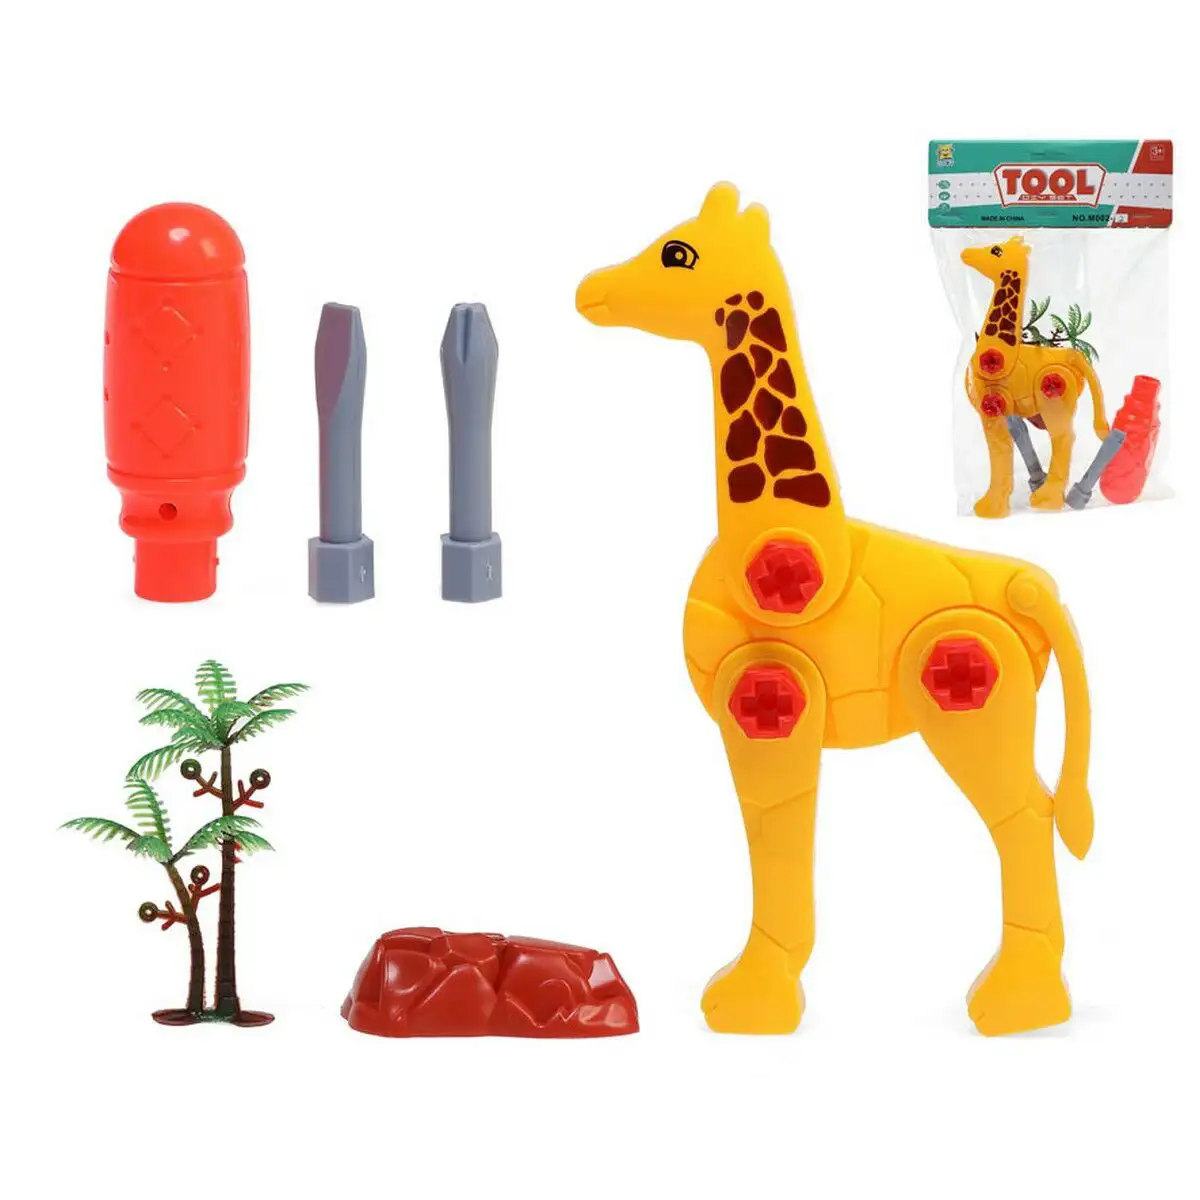 Animaux girafe visser et devisser_4070. DIAYTAR SENEGAL - Où Choisir est une Célébration de l'Artisanat. Explorez notre boutique en ligne et choisissez des articles qui incarnent l'art et le savoir-faire du Sénégal.